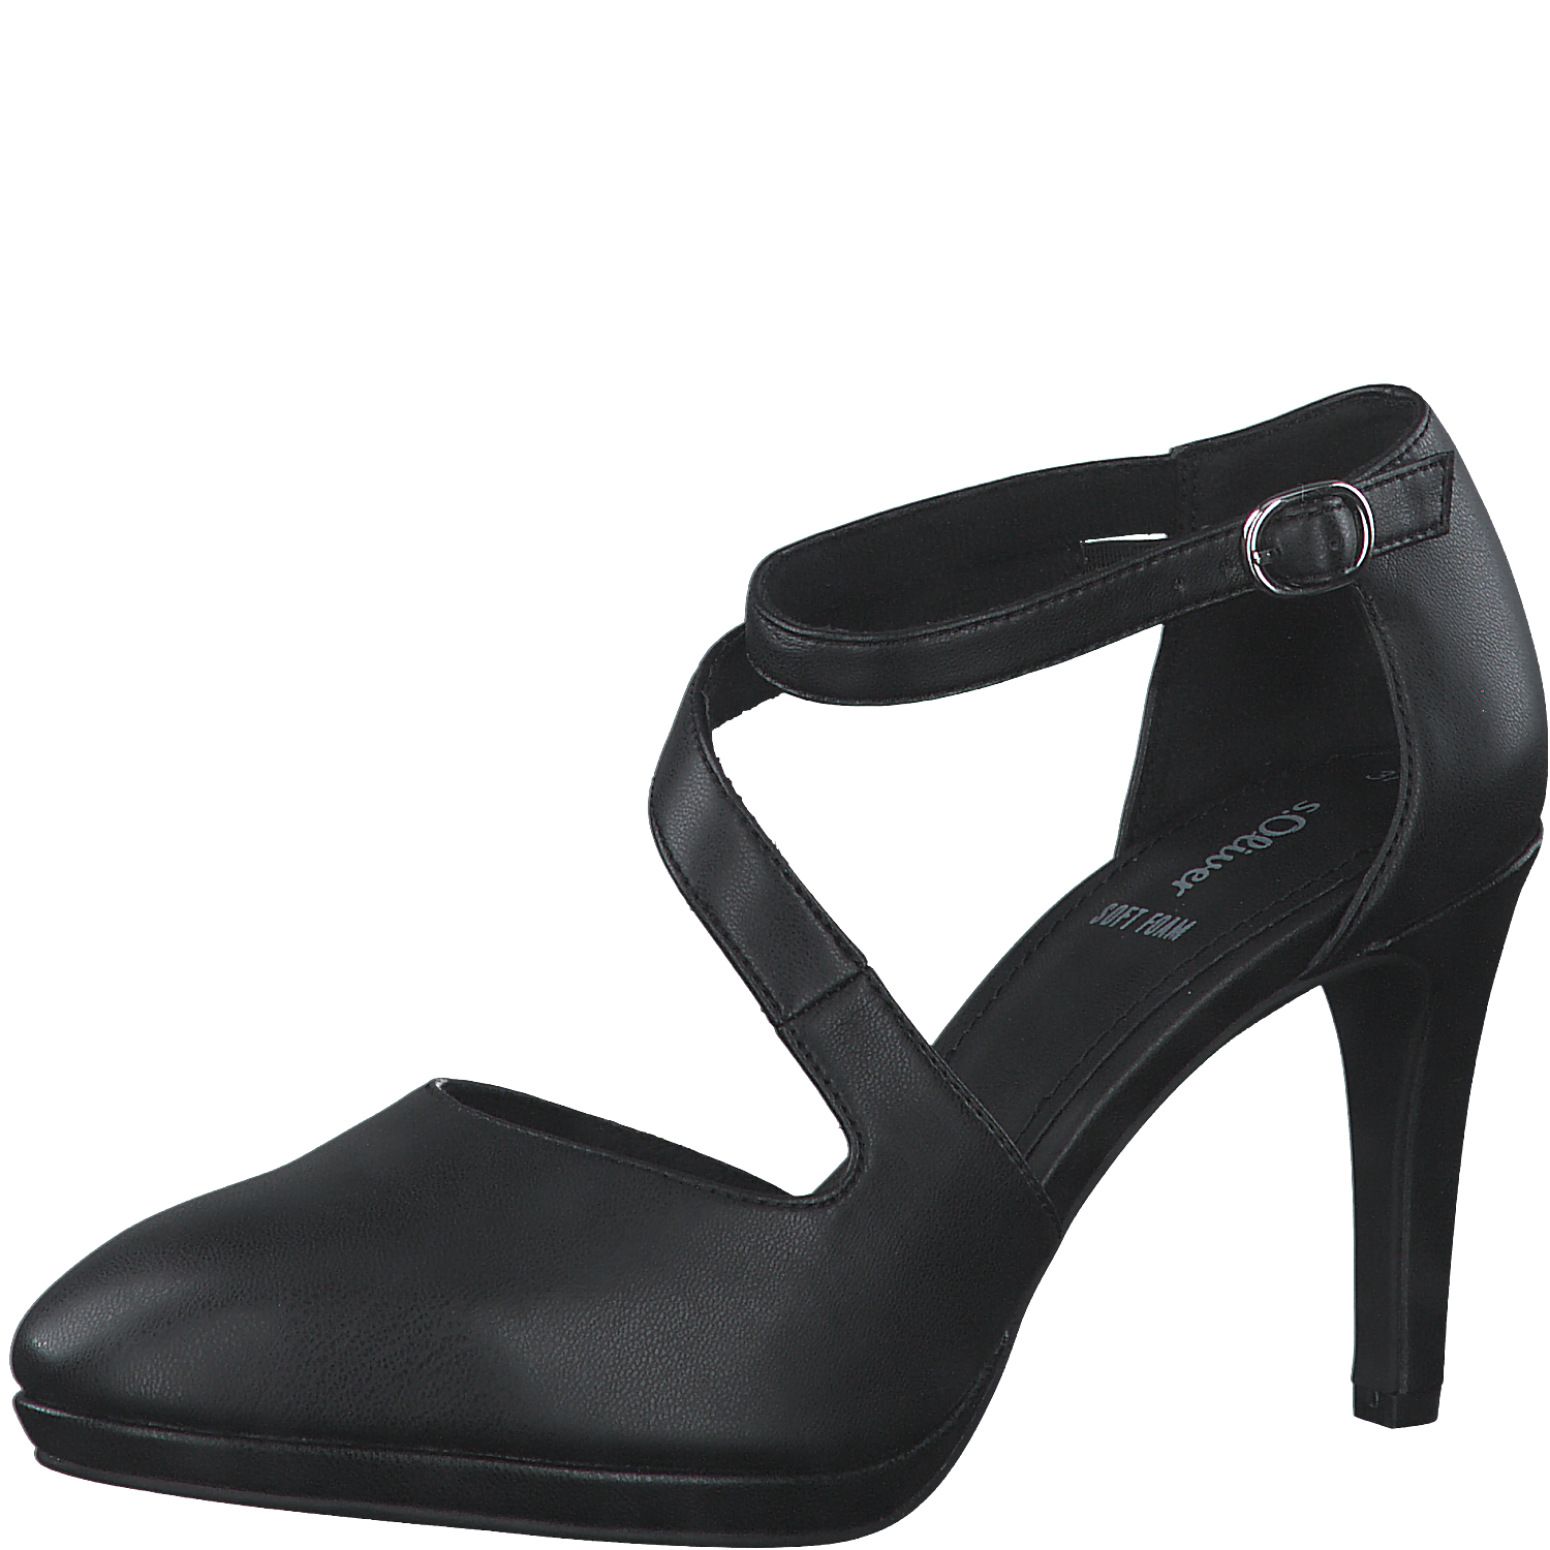 S.OLIVER női alkalmi cipő 5-24401-20 022 BLACK NAPPA